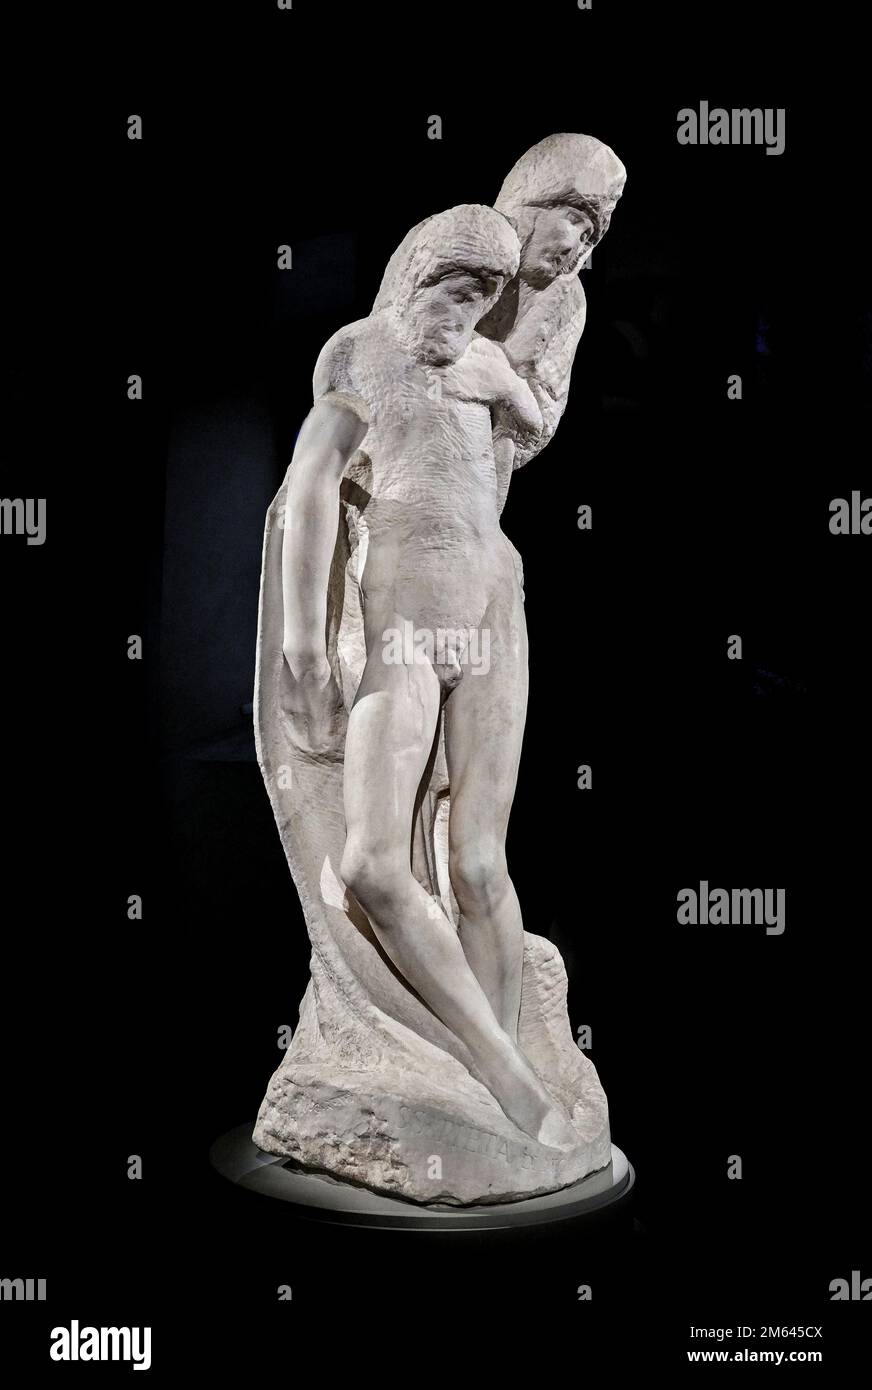 Pietà Rondanini - marmo - Michelangelo Buonarroti - 1552/1564 - Milano, Castello Sforzesco Stock Photo